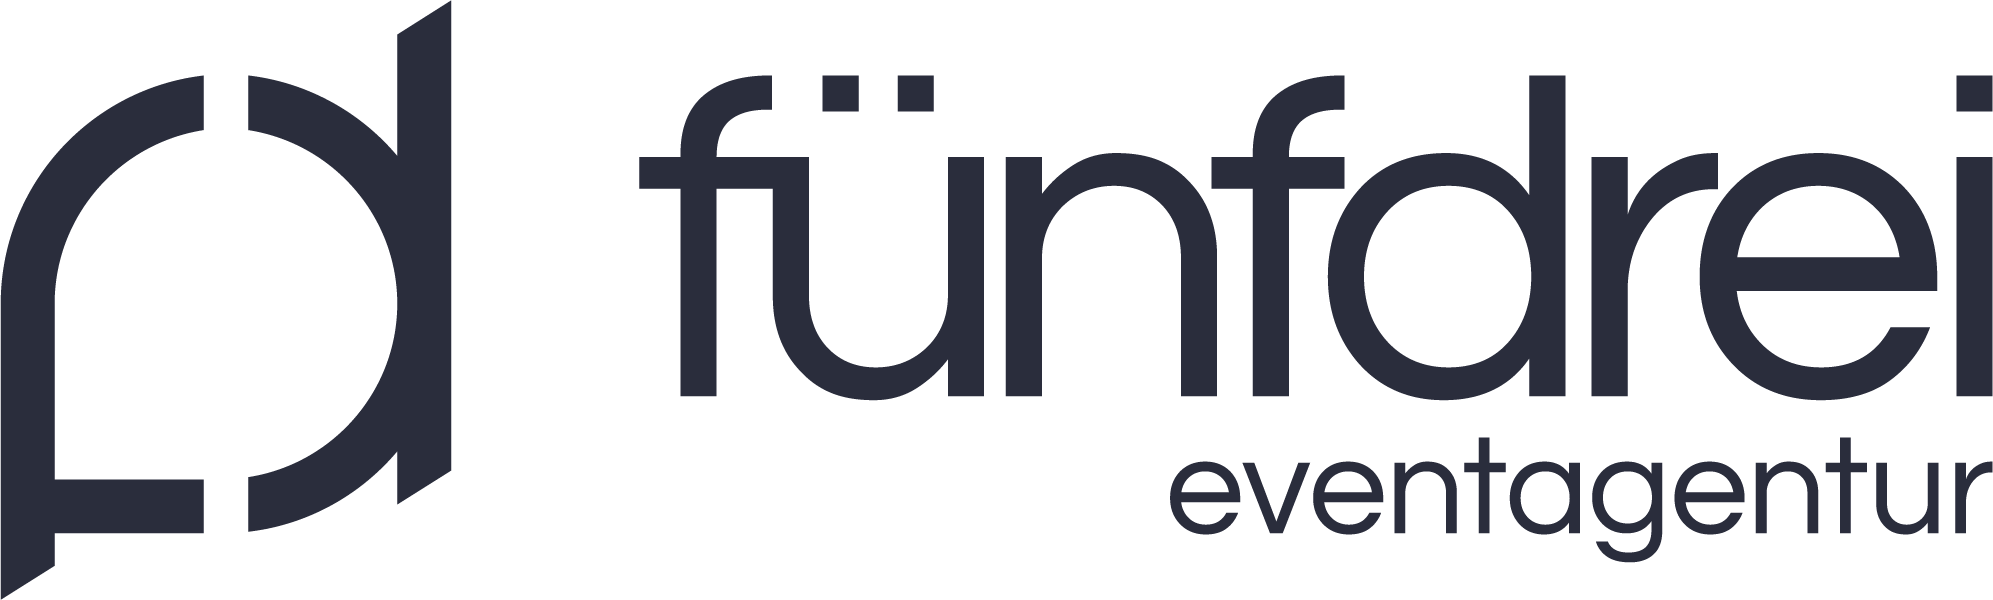 01_Logo_fd_fünfdrei eventagentur_Anthrazit